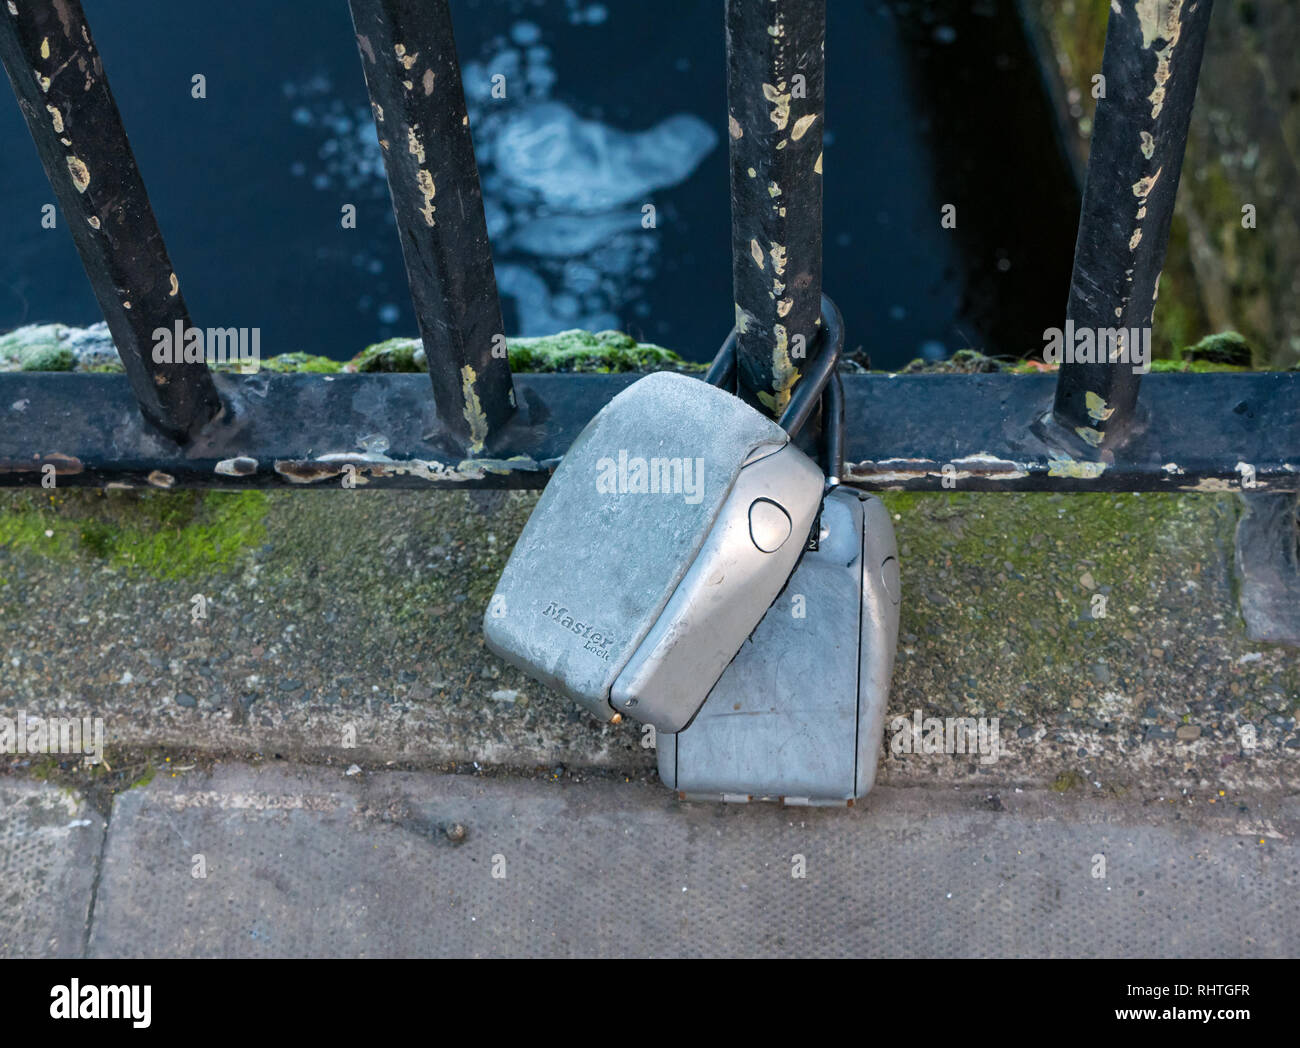 Airbnb, kurzfristige Vermietung, keysafes auf Brücke Geländer gesperrt, das Ufer, Leith, Edinburgh, Schottland, Großbritannien Stockfoto